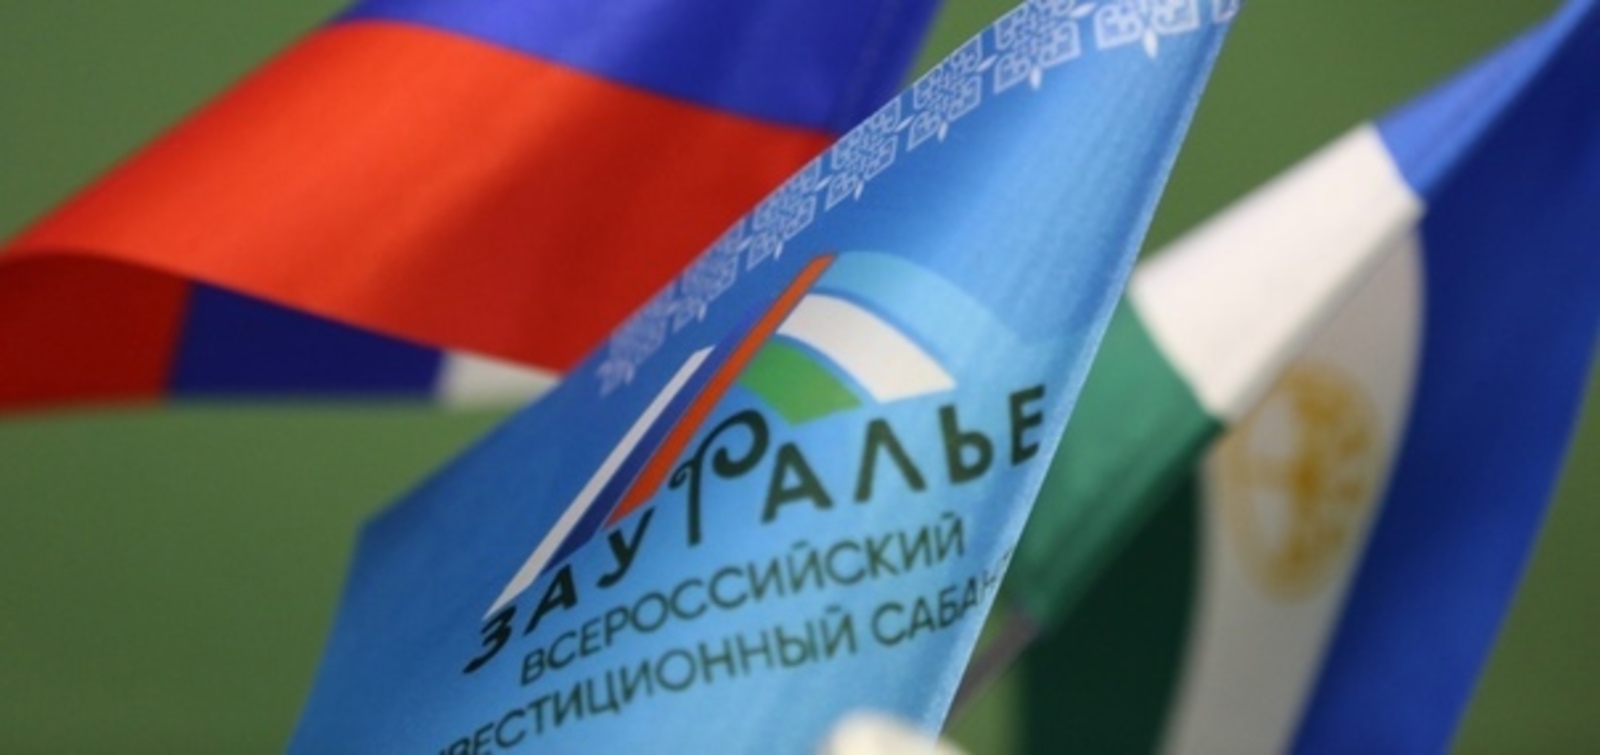 Инвестсабантуй «Зауралье-2021» в Башкирии: 5 инвестпроектов на 2,5 млрд рублей